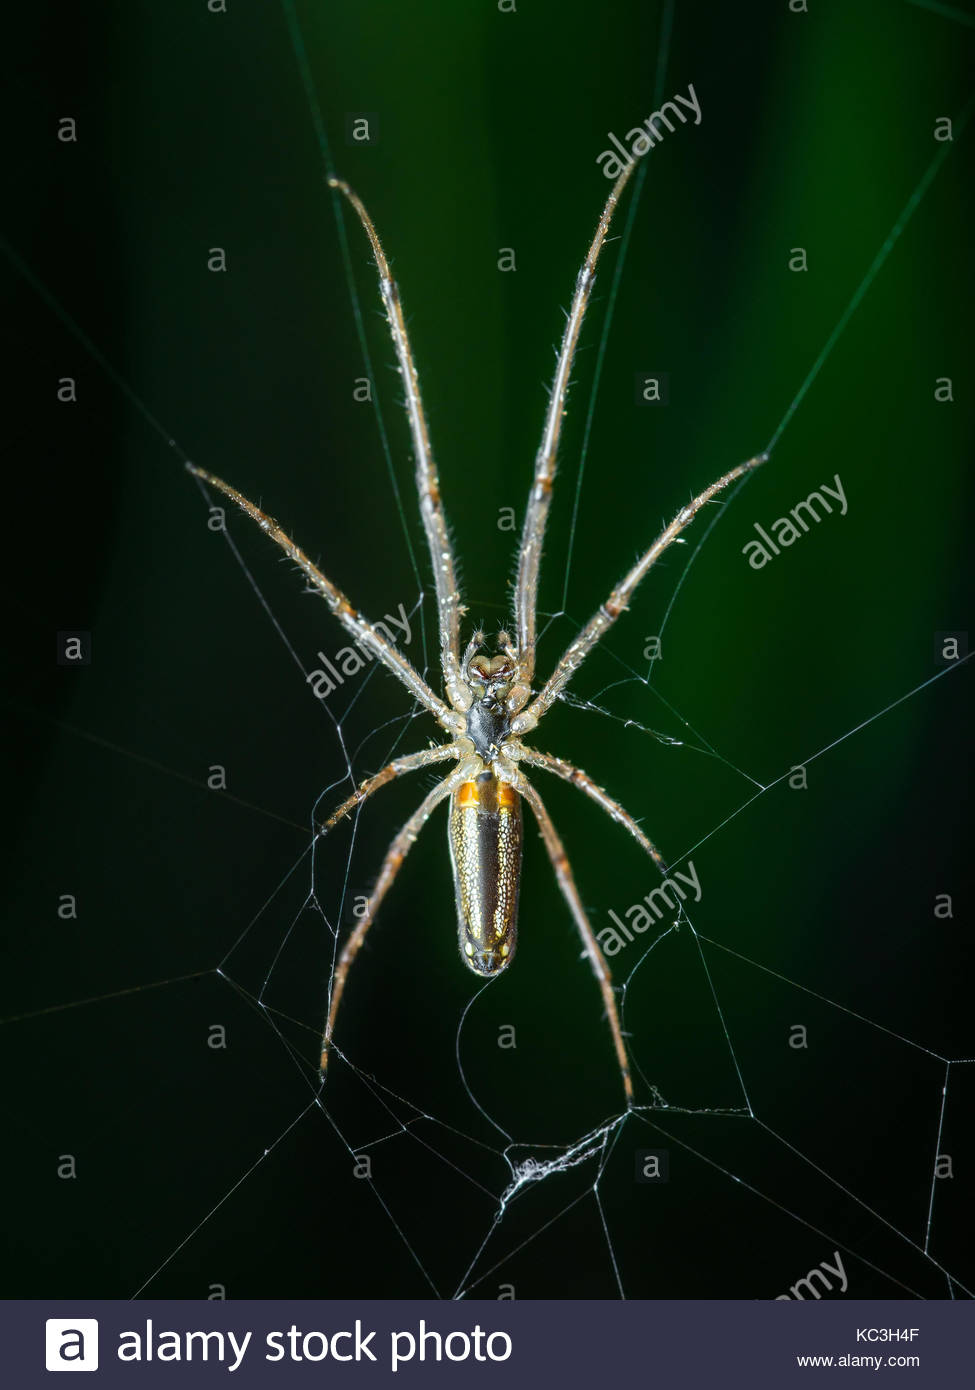 Spider Web Trap On Dark Background Stock Photo